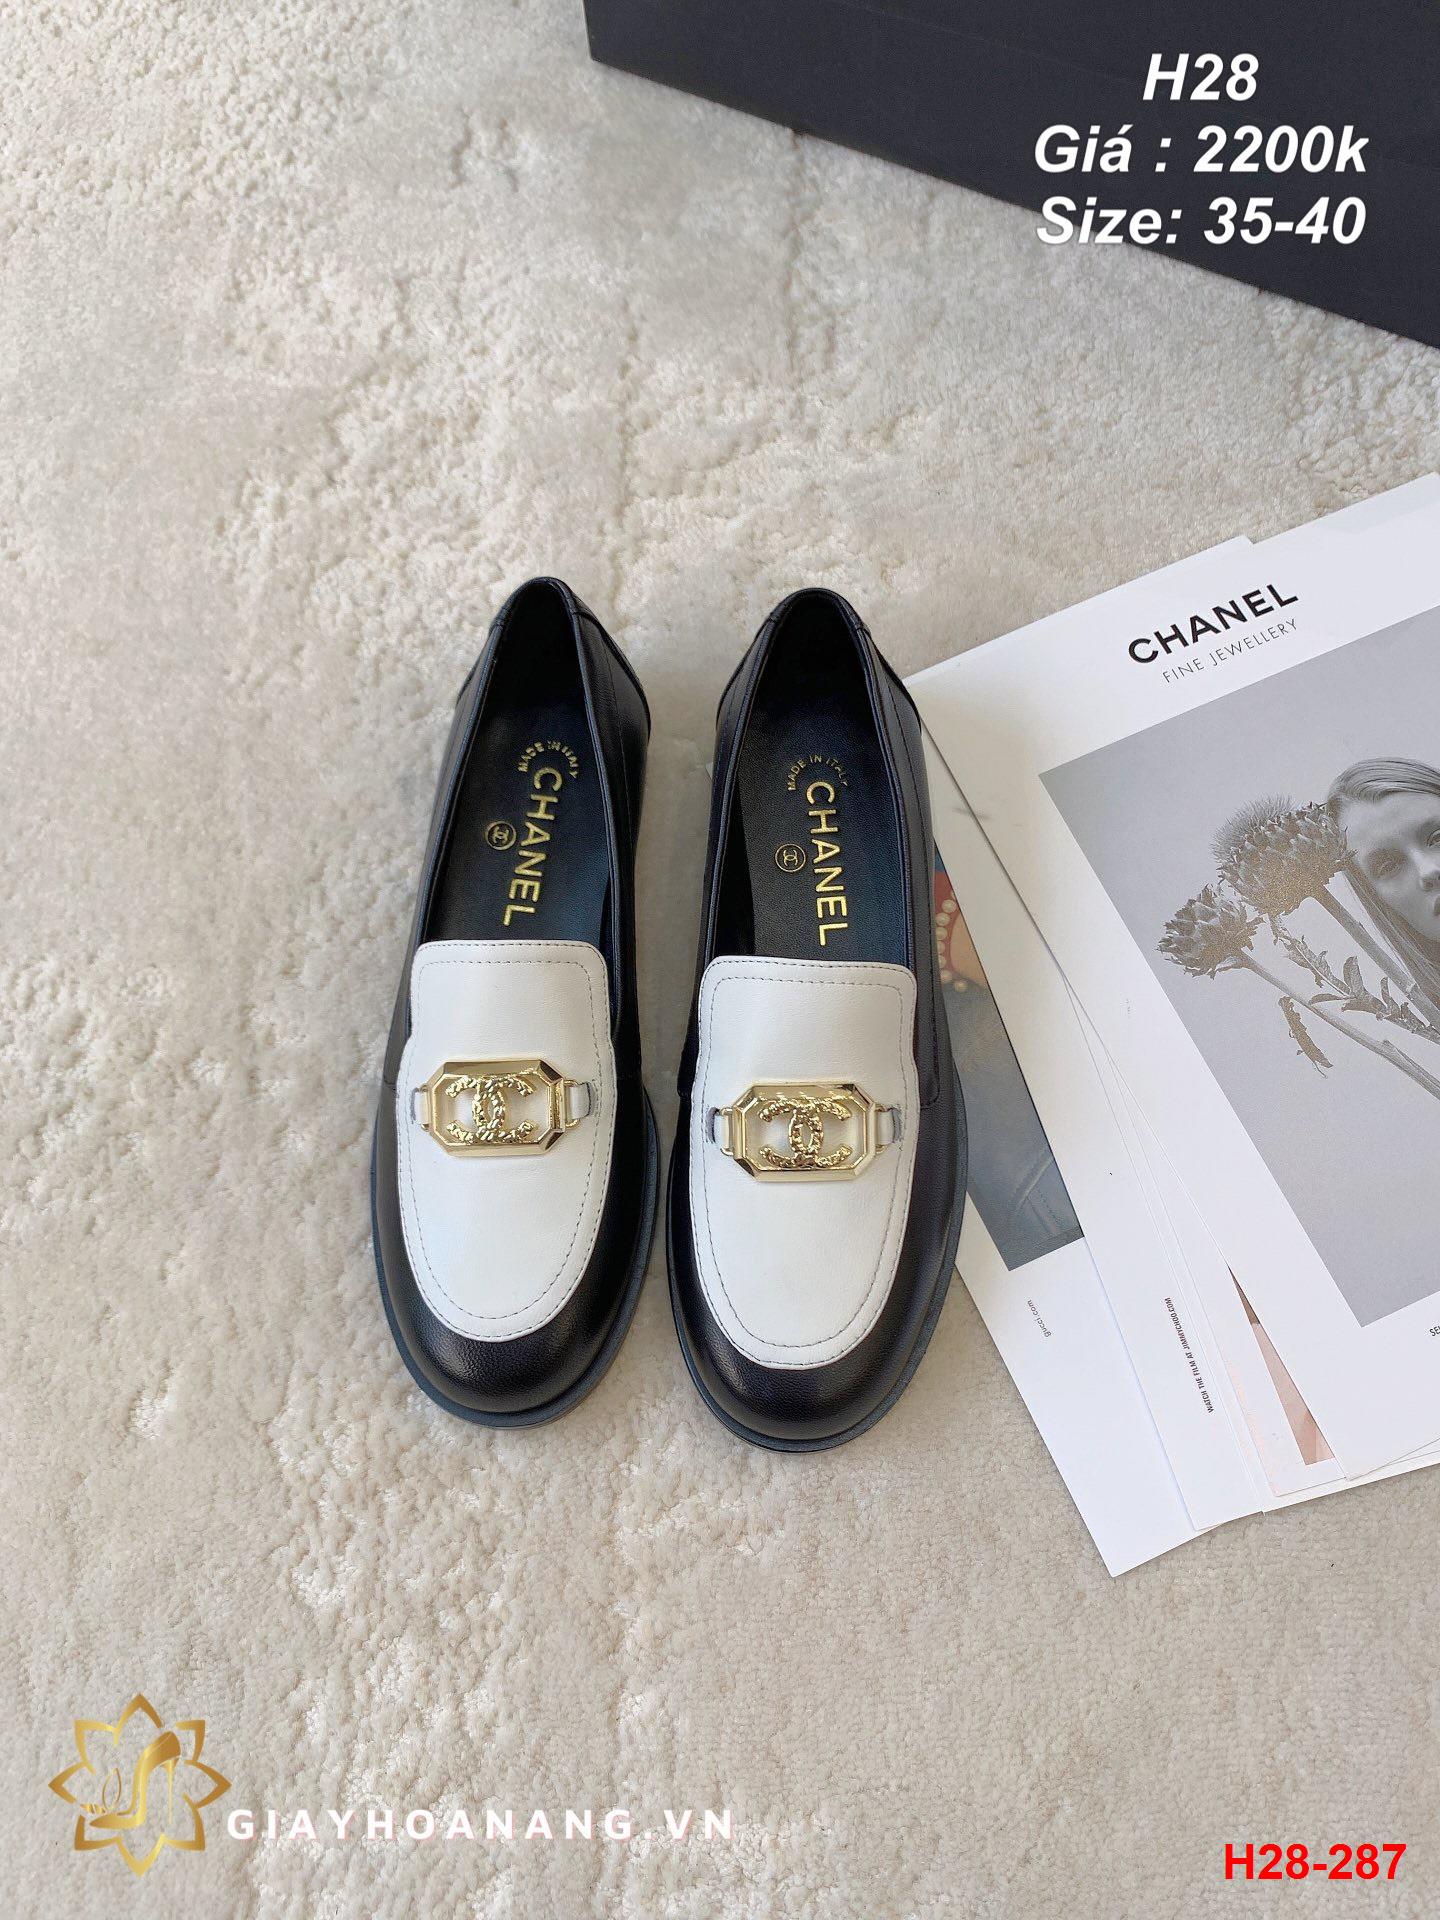 H28-287 Chanel giày lười siêu cấp